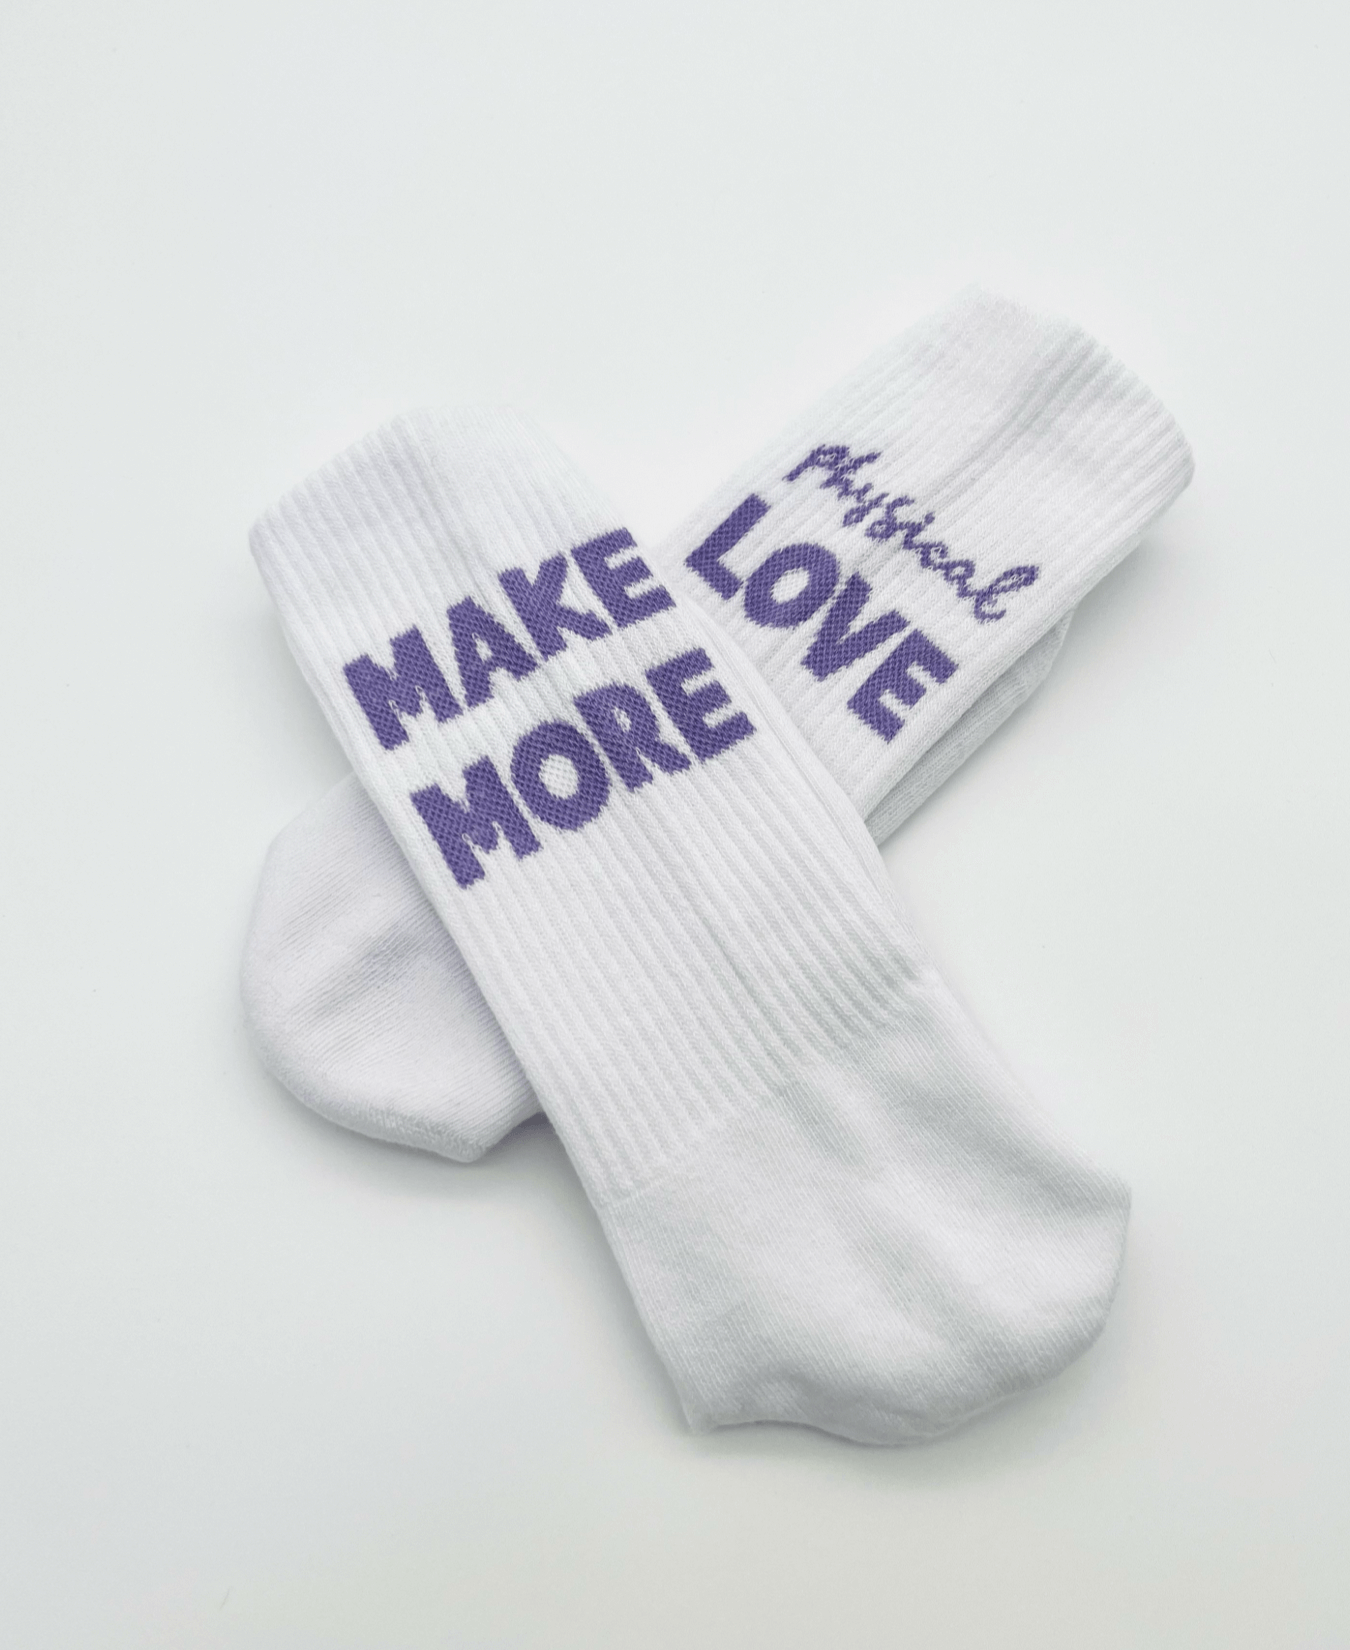 Weiße Tennissocken aus der MMPL Serie mit eingewebter Aussage in lila: Linke Socke: "Make More" und rechte Socke: "physical love"